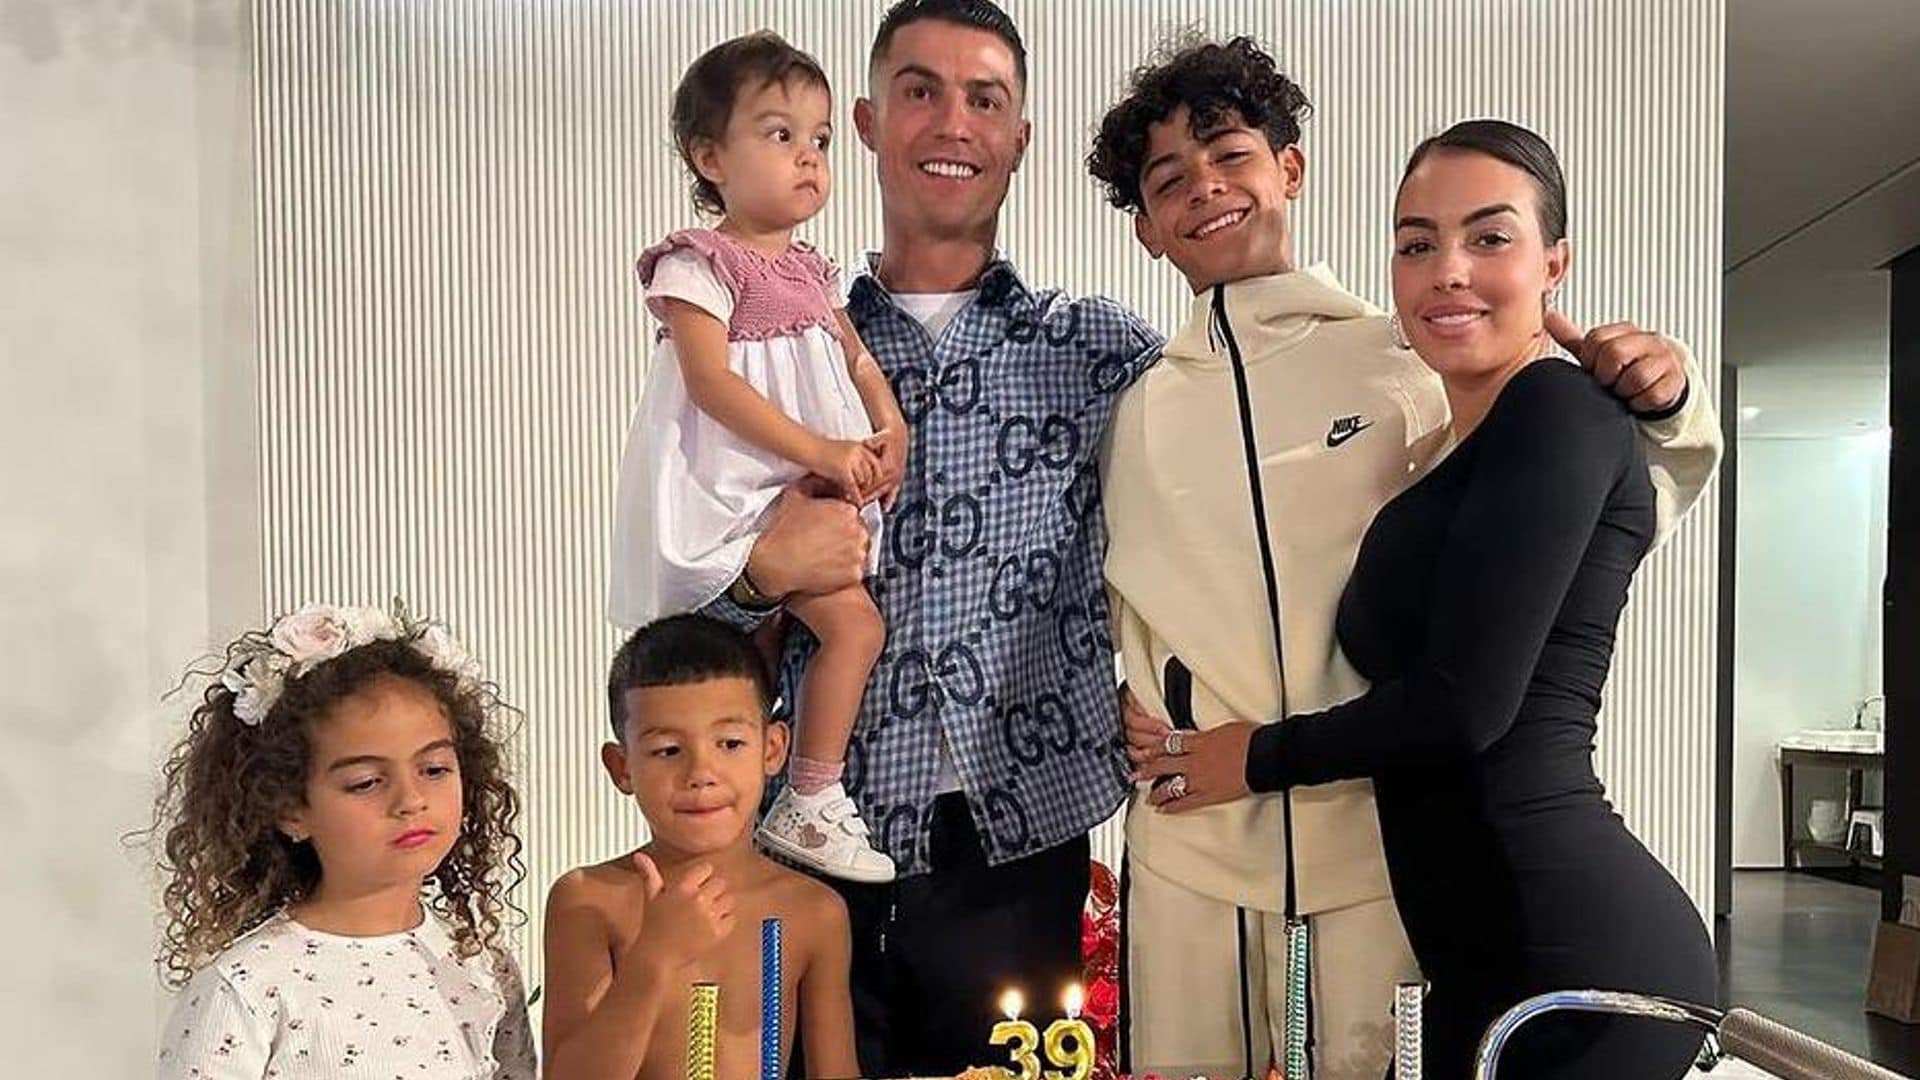 cristiano ronaldo celebra su cumplea os 39 junto a sus hijos y georgina rodr guez